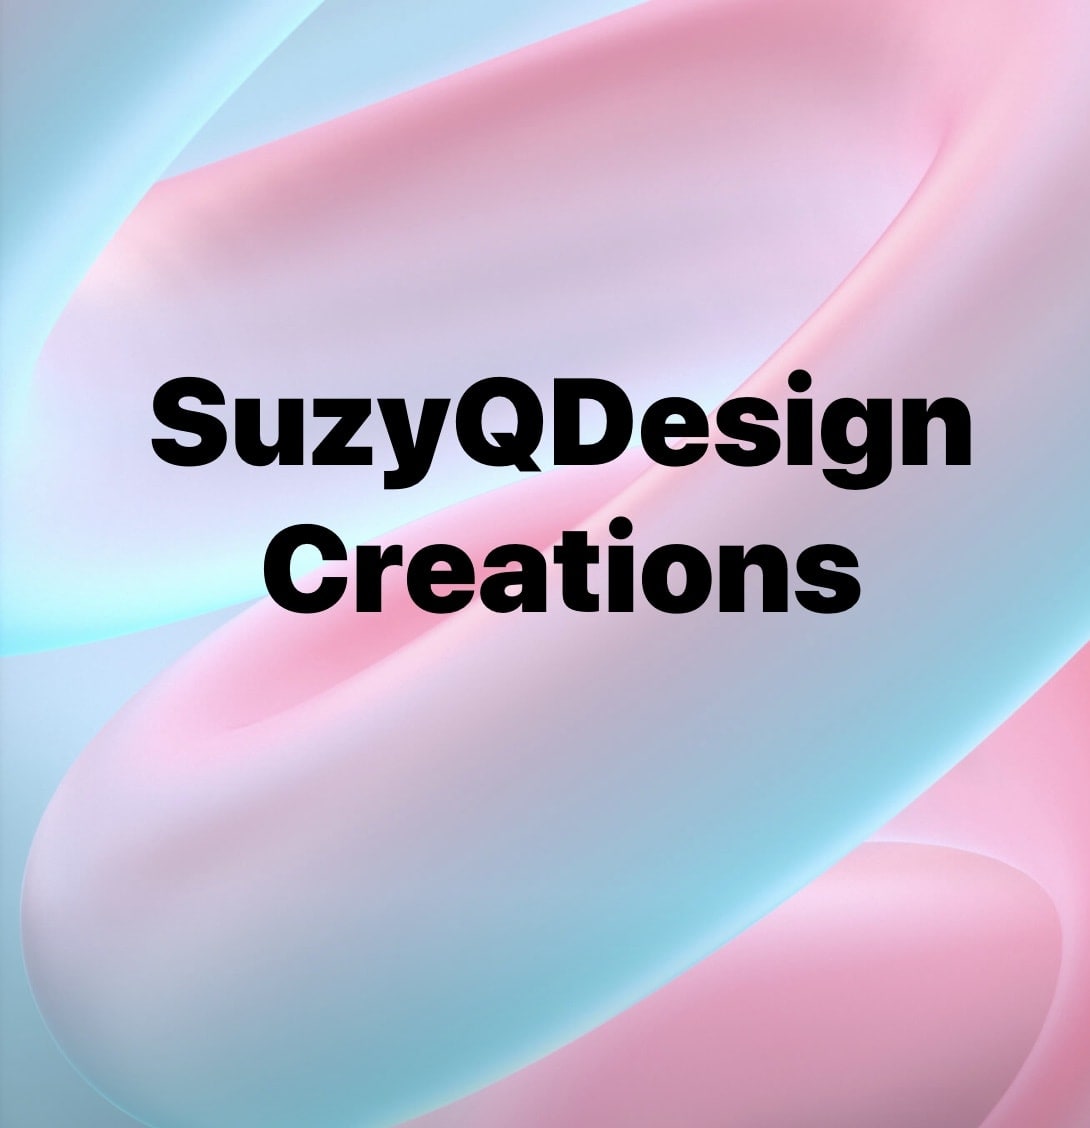 Suzy Q Design Creations